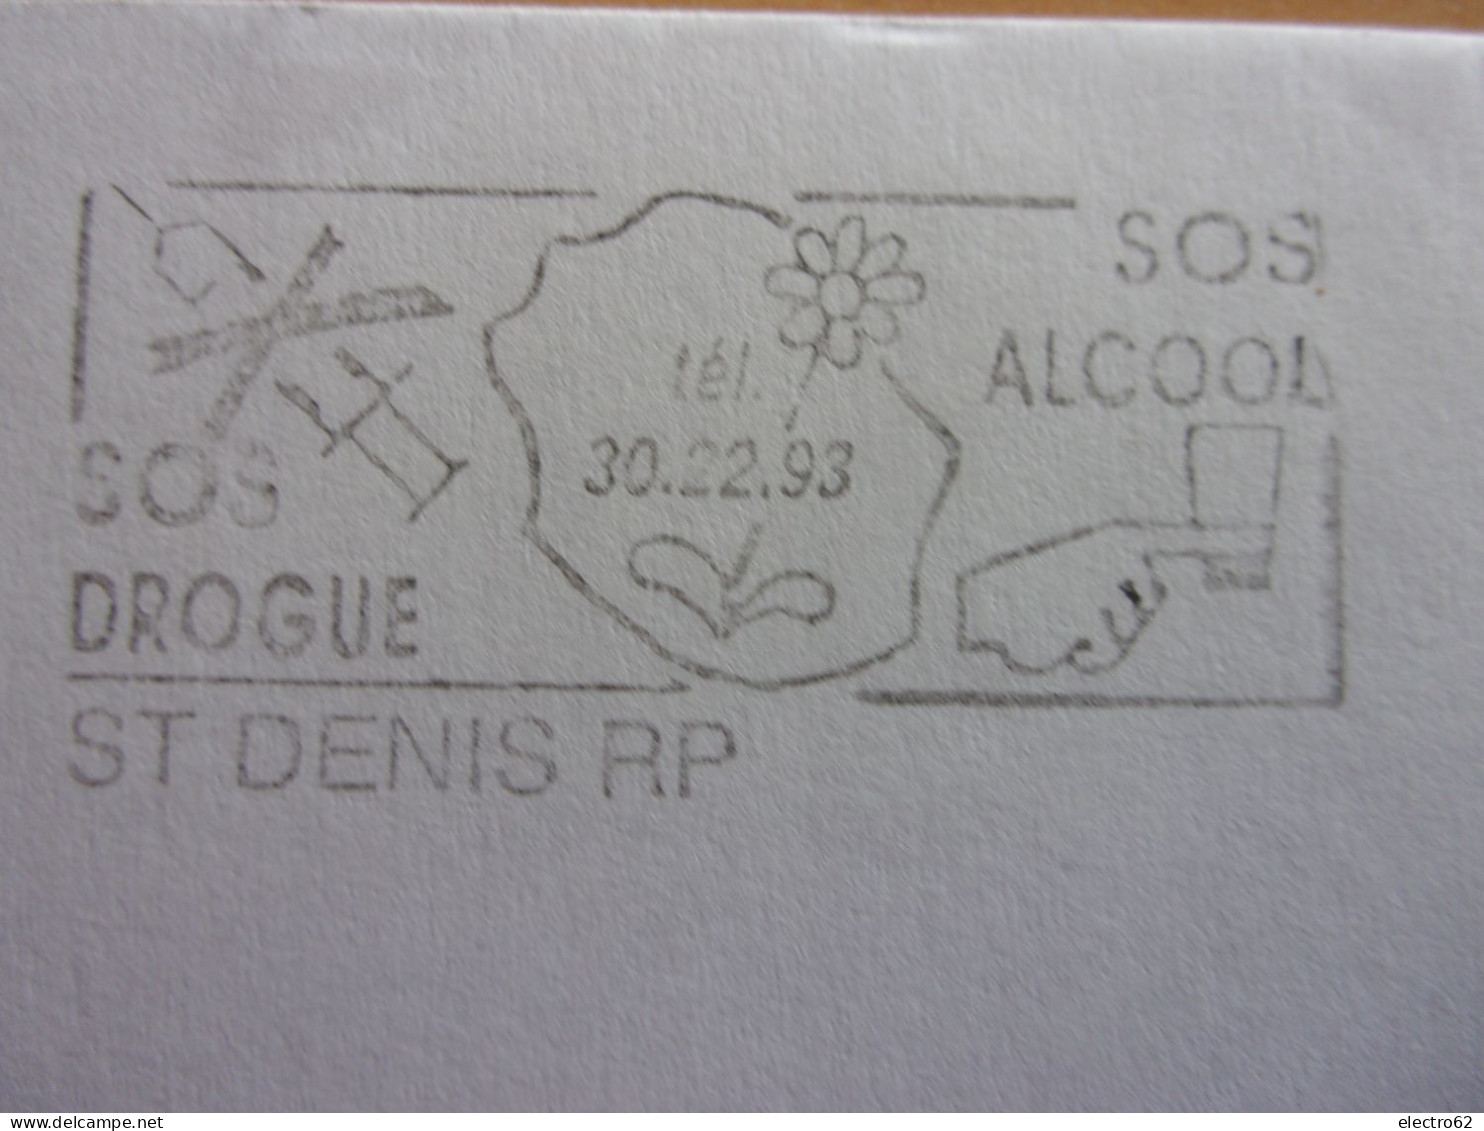 St Denis RP Réunion SOS Drogue Alcool Marianne Du Bicentenaire Seringue Fleur - Drogue